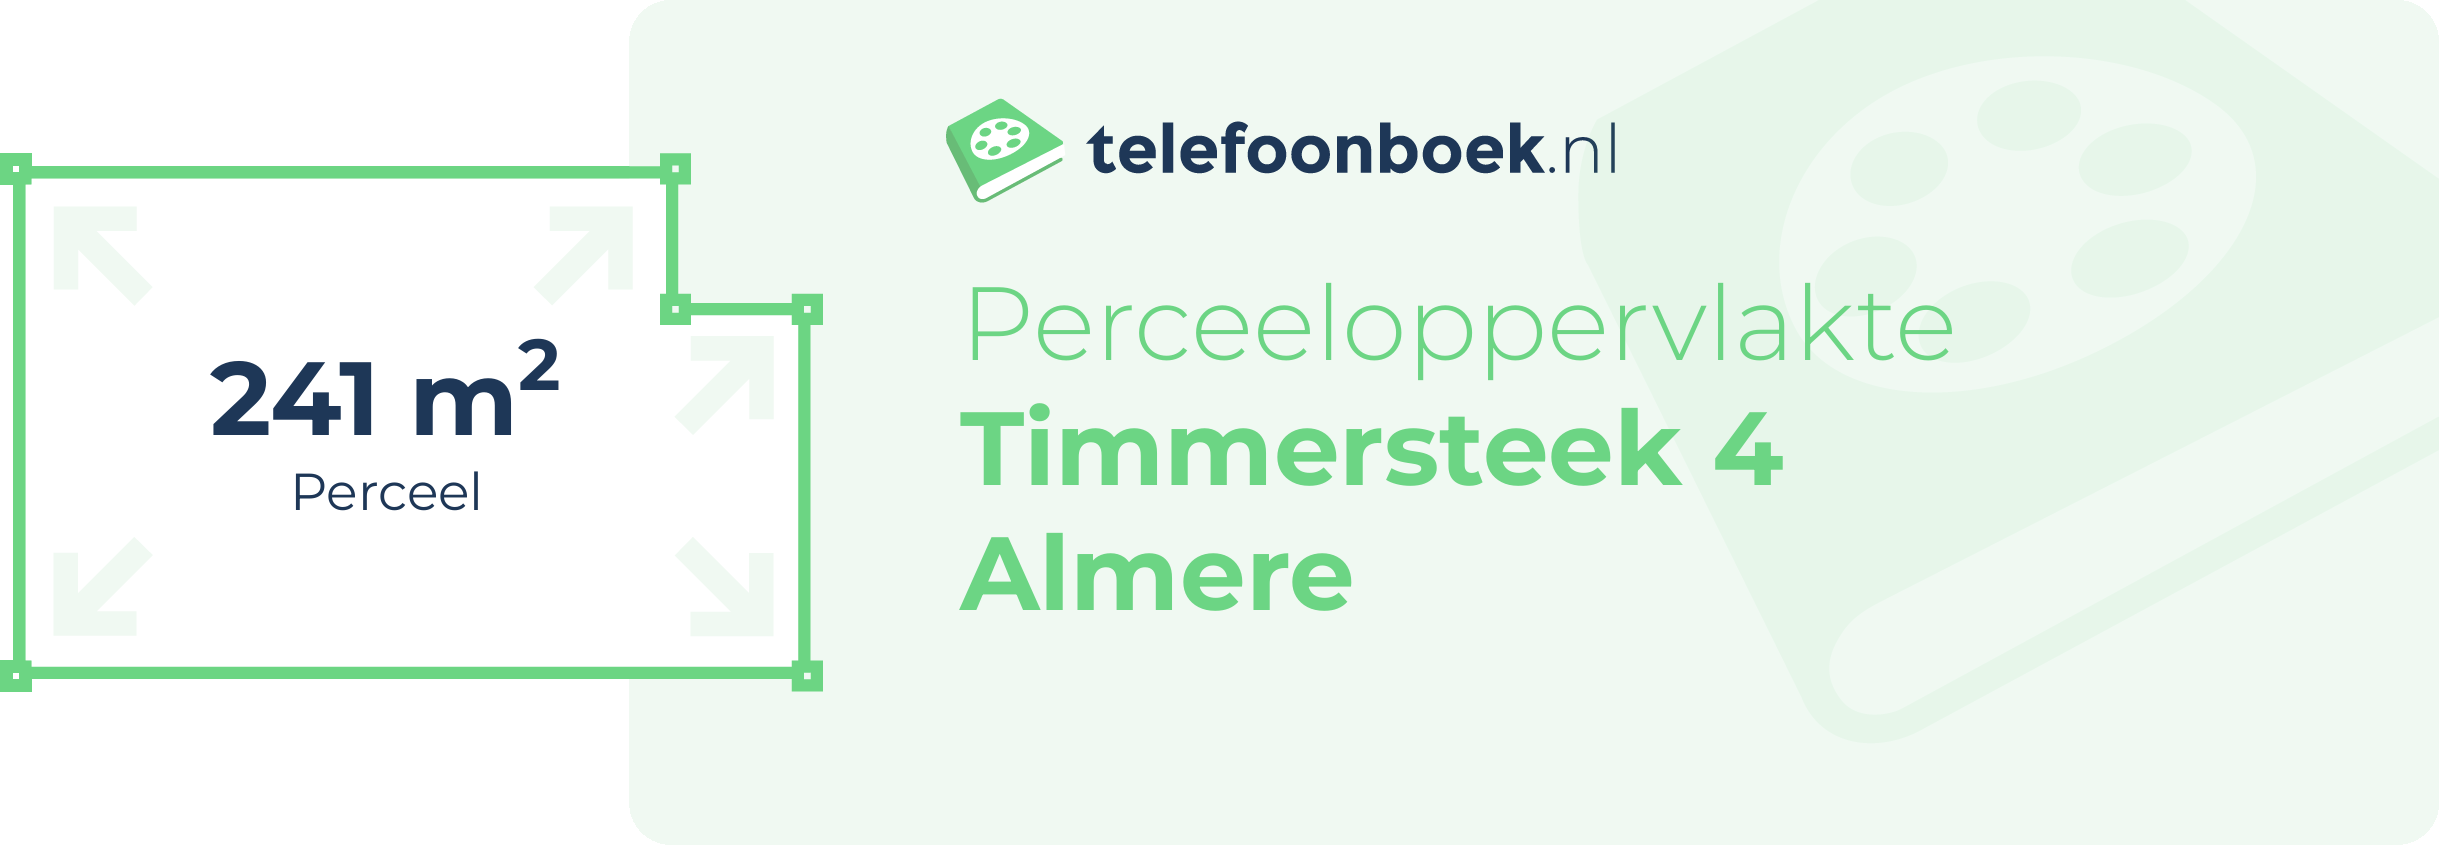 Perceeloppervlakte Timmersteek 4 Almere